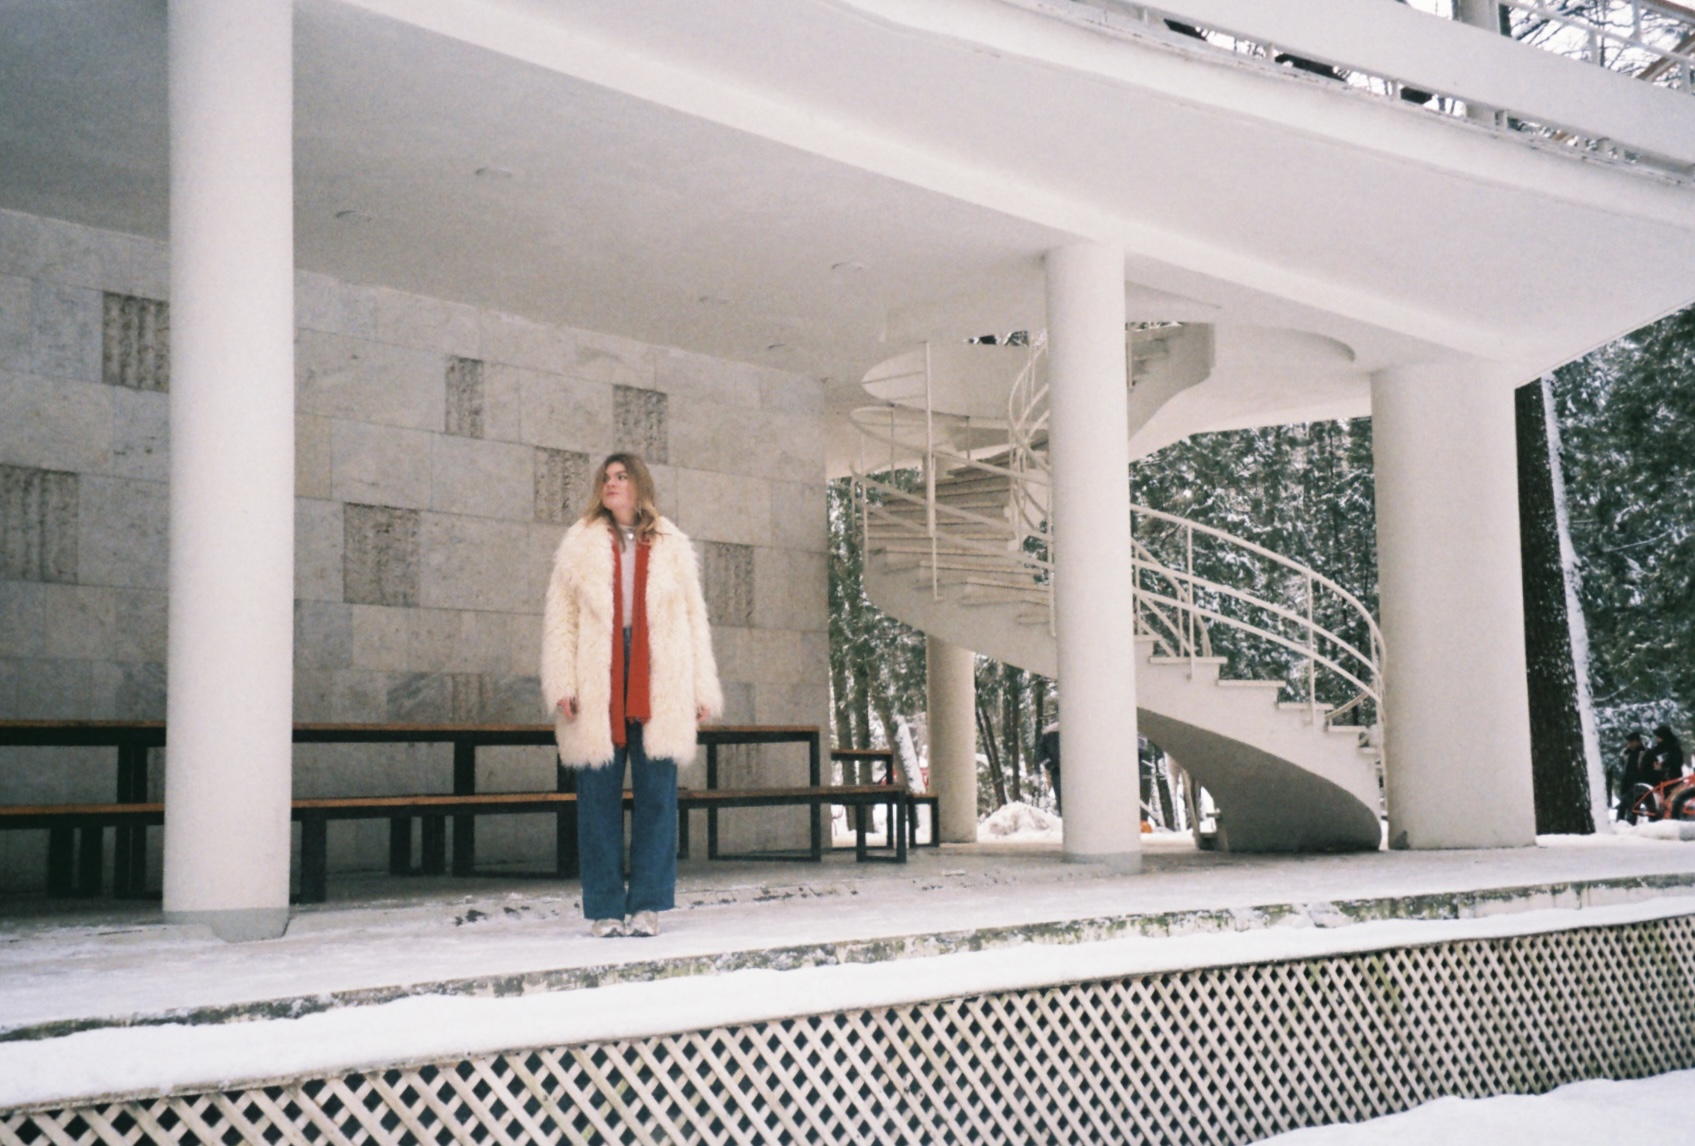 Винтовая лестница музейного комплекса — настоящий арт-объект и прекрасная локация для фотографий. Фото: Мансур Усанов